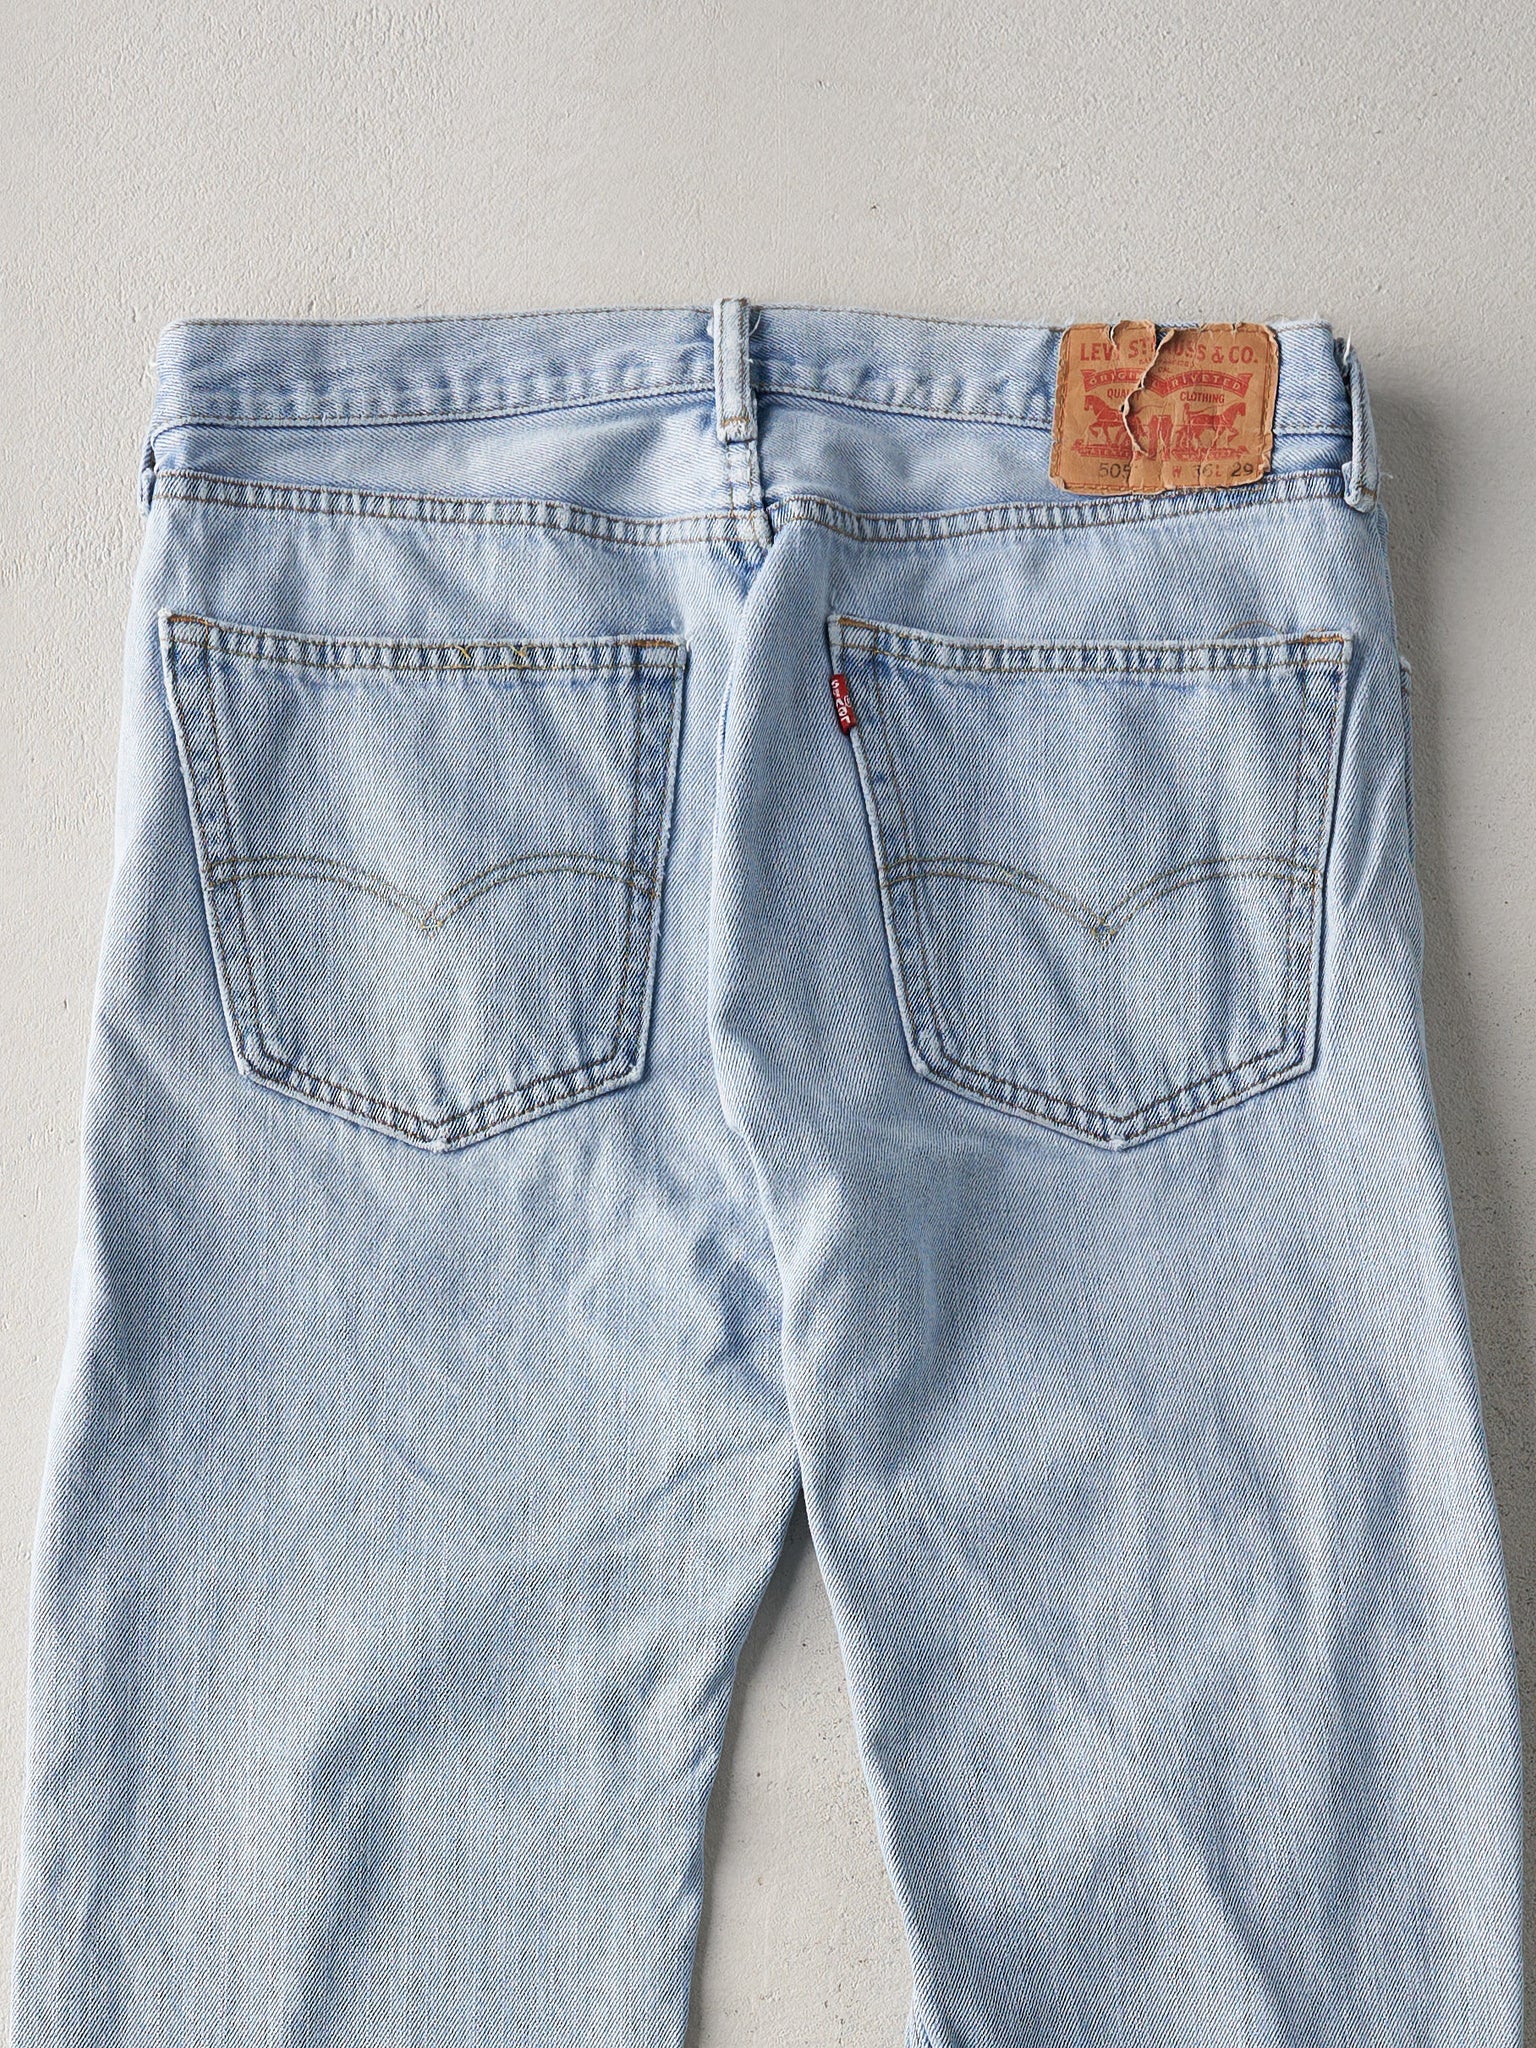 Vintage 90s Light Wash Levis 505 Jeans (34x28)